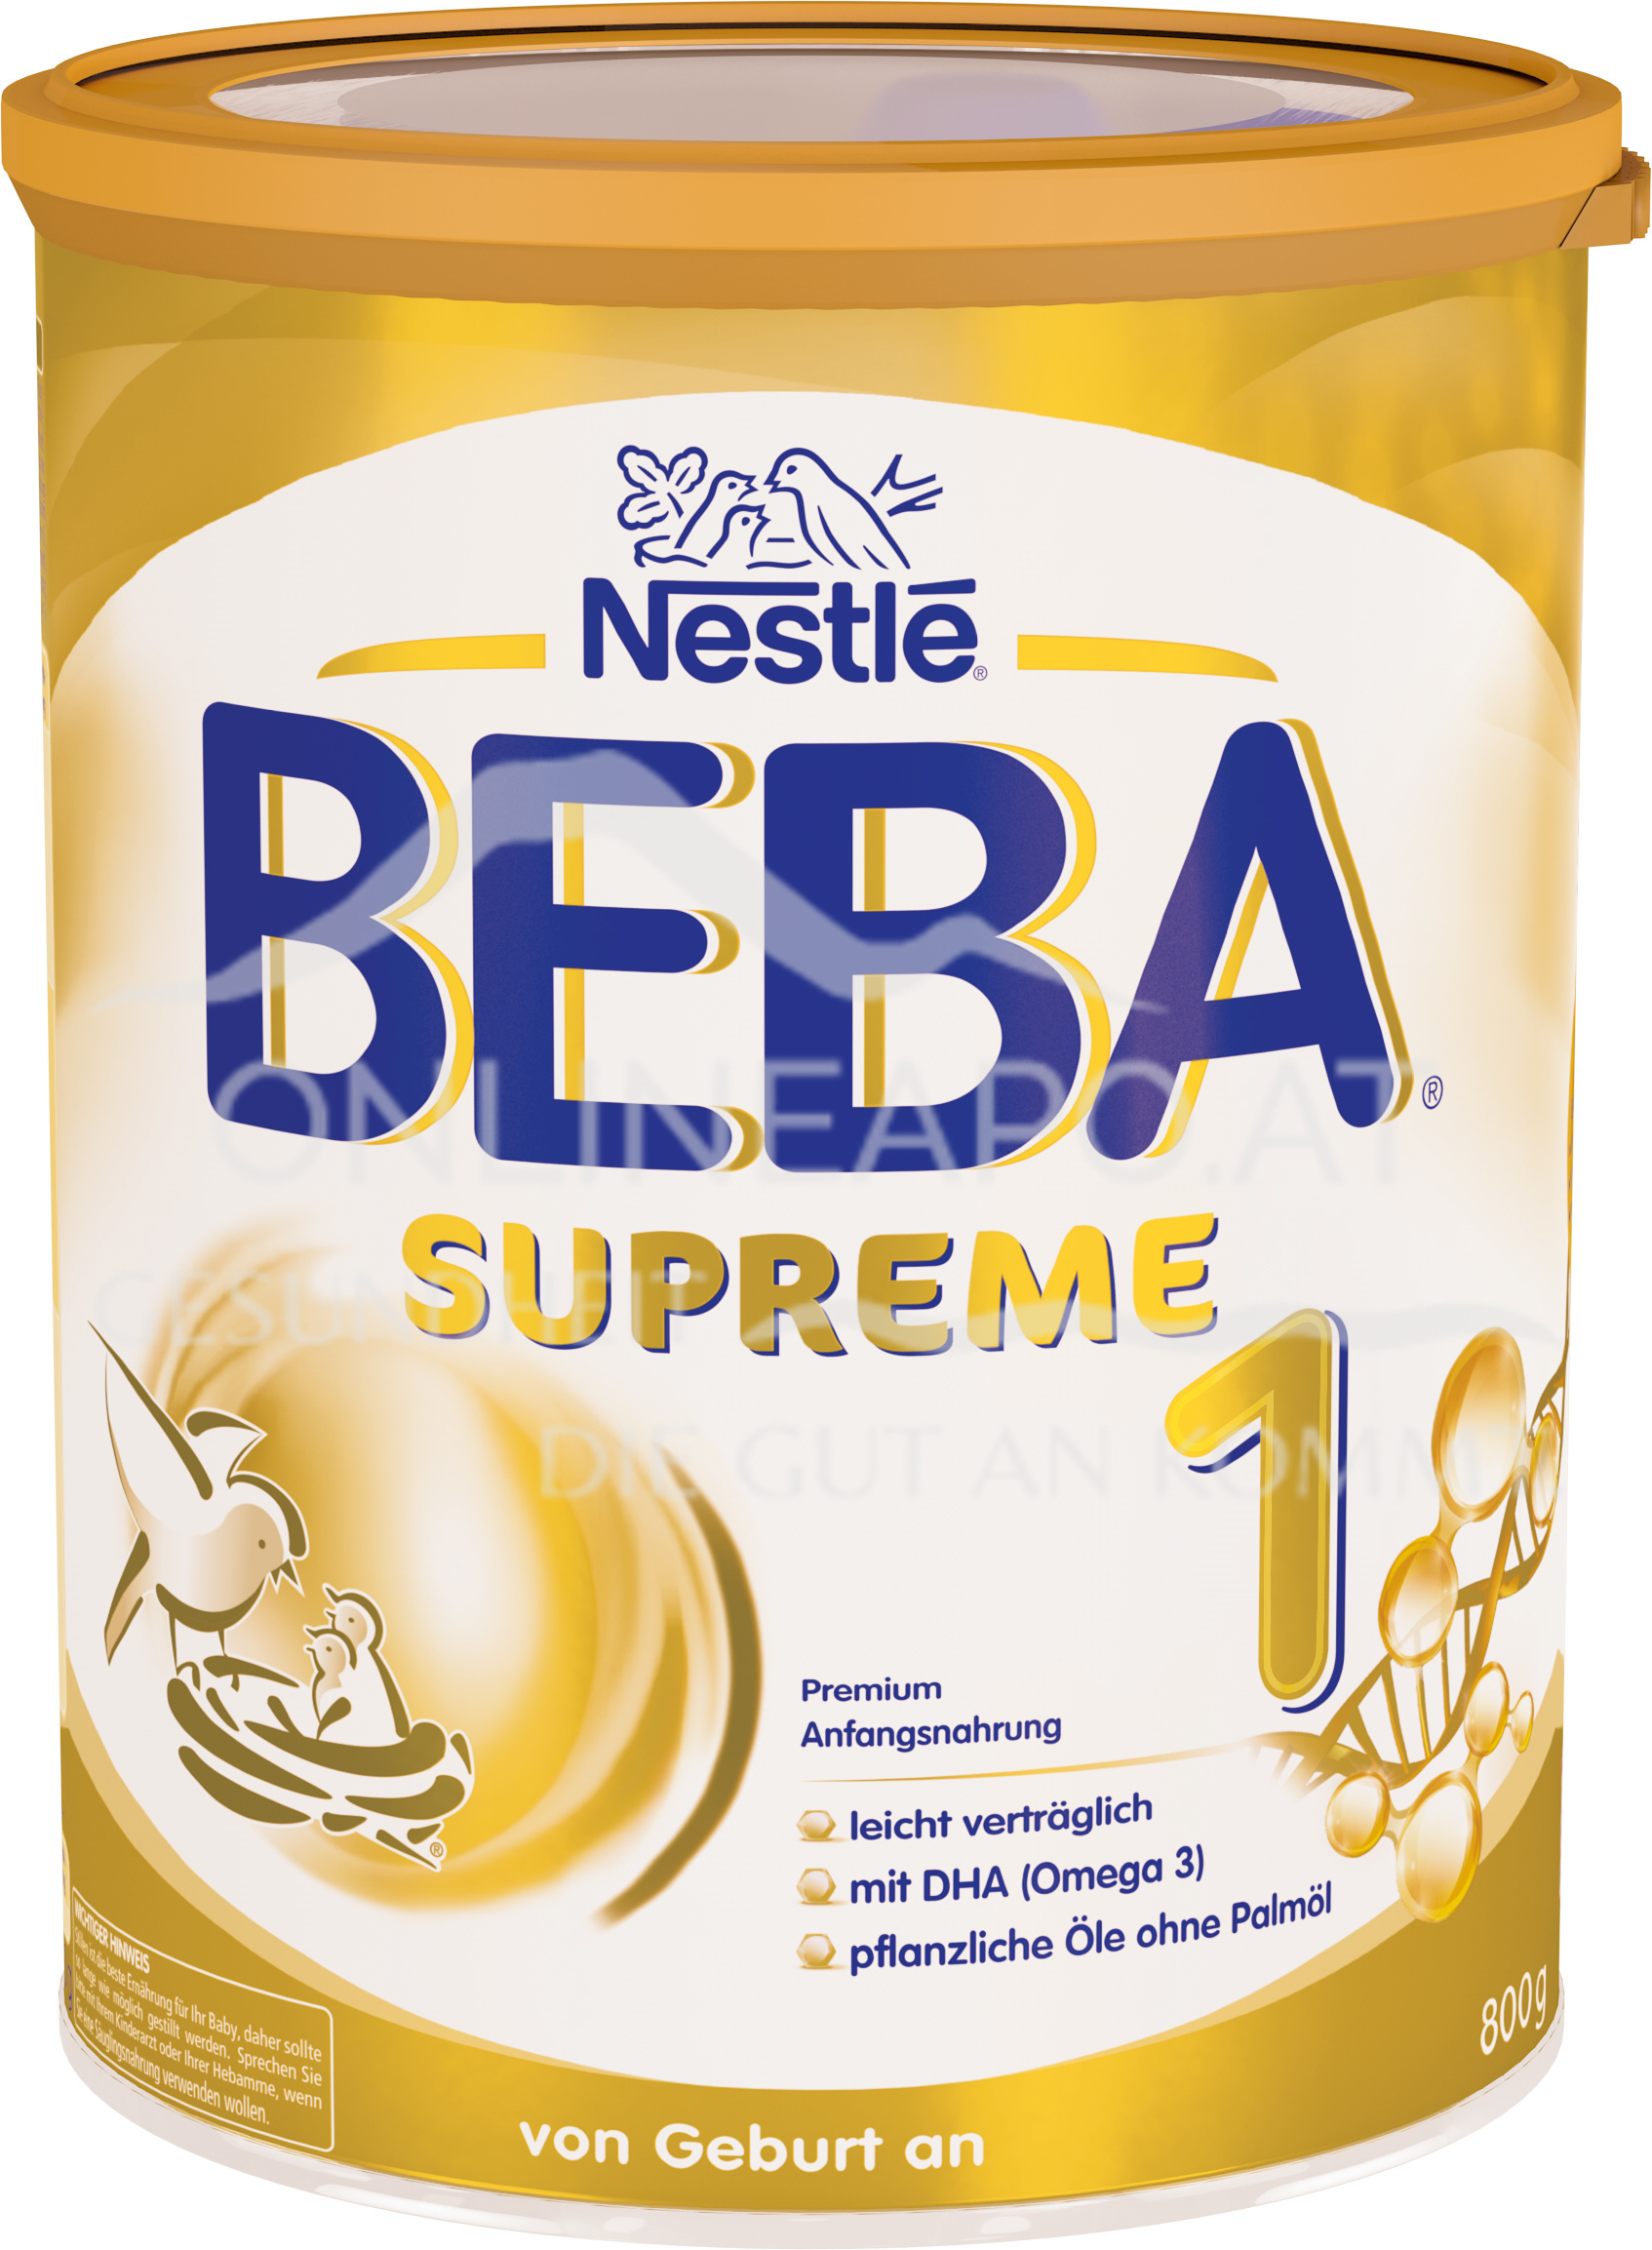 Nestlé BEBA SUPREME 1